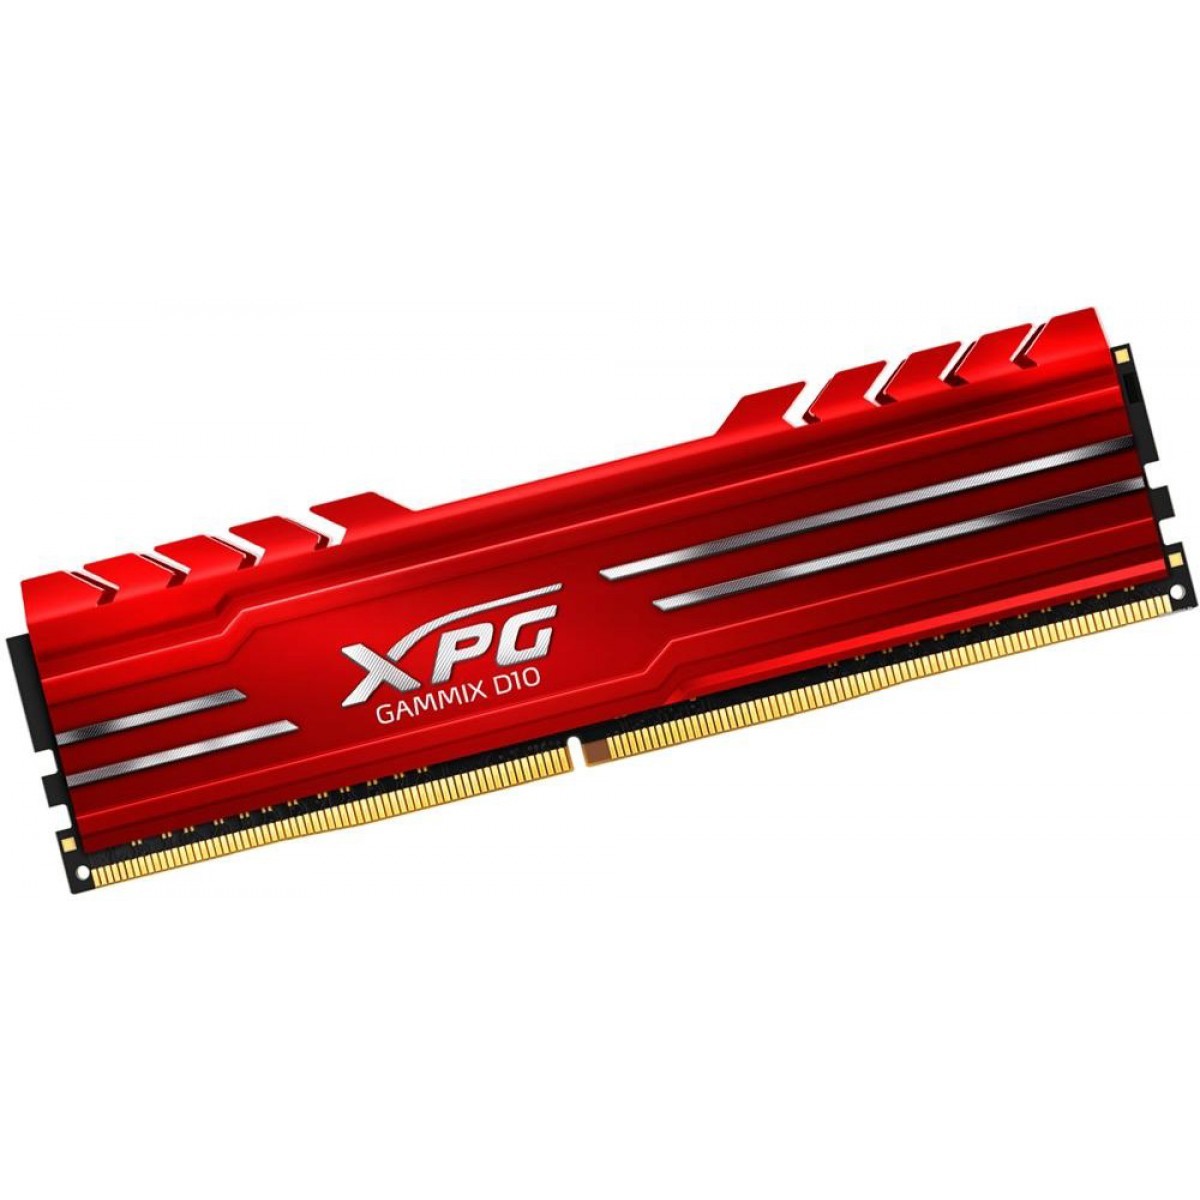 Memória DDR4 XPG Gammix D10, 8GB 3200Mhz, CL16, Red, AX4U320038G16-SR10